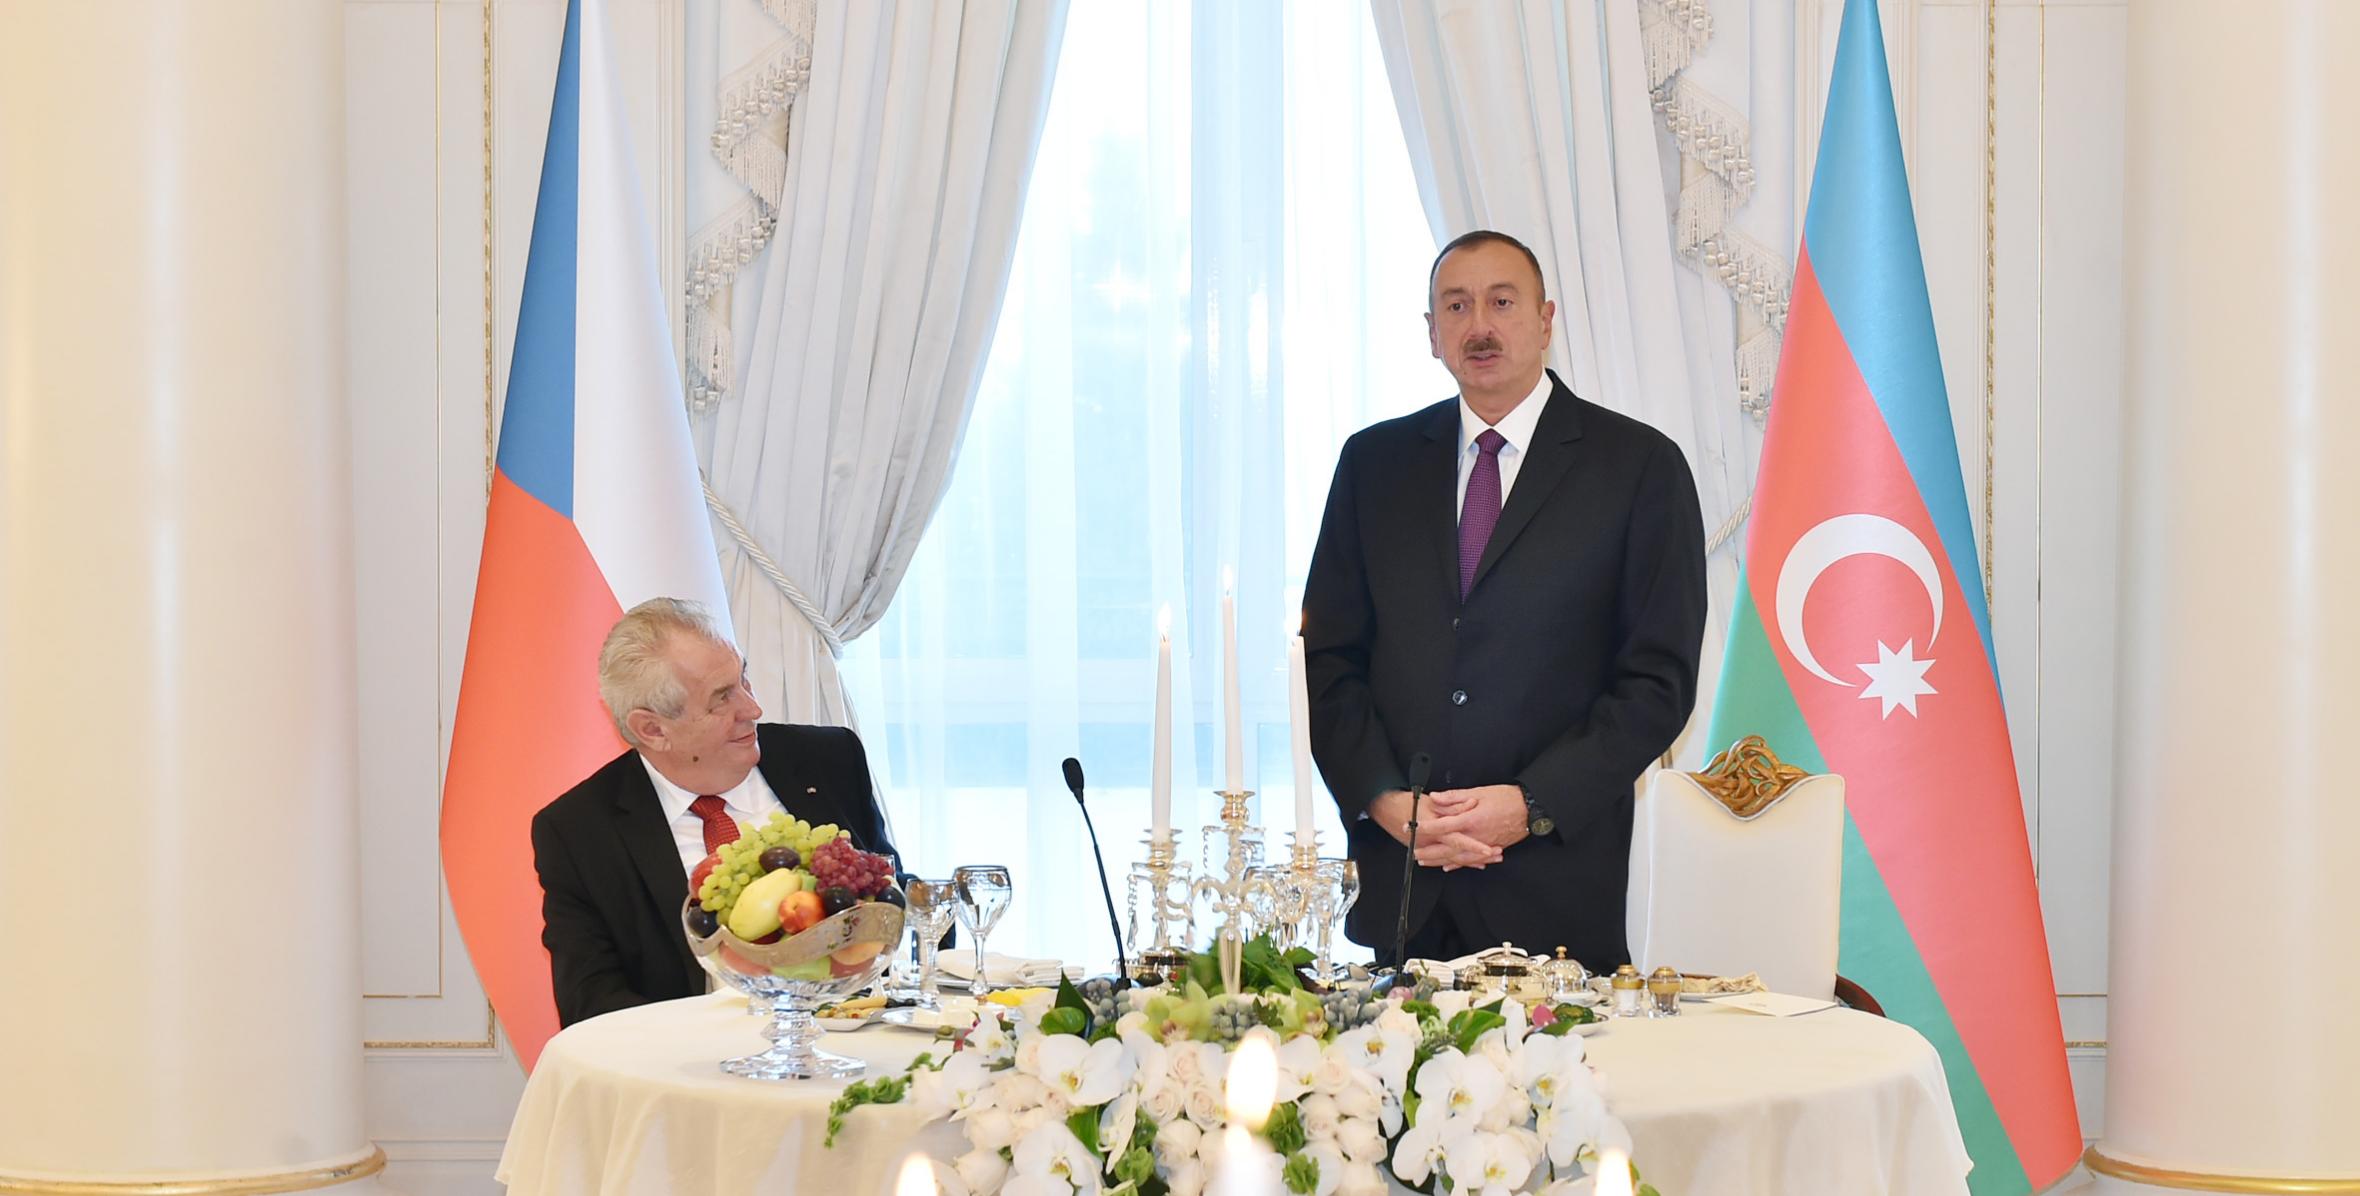 От имени Ильхама Алиева был устроен официальный прием в честь Президента Чешской Республики Милоша Земана